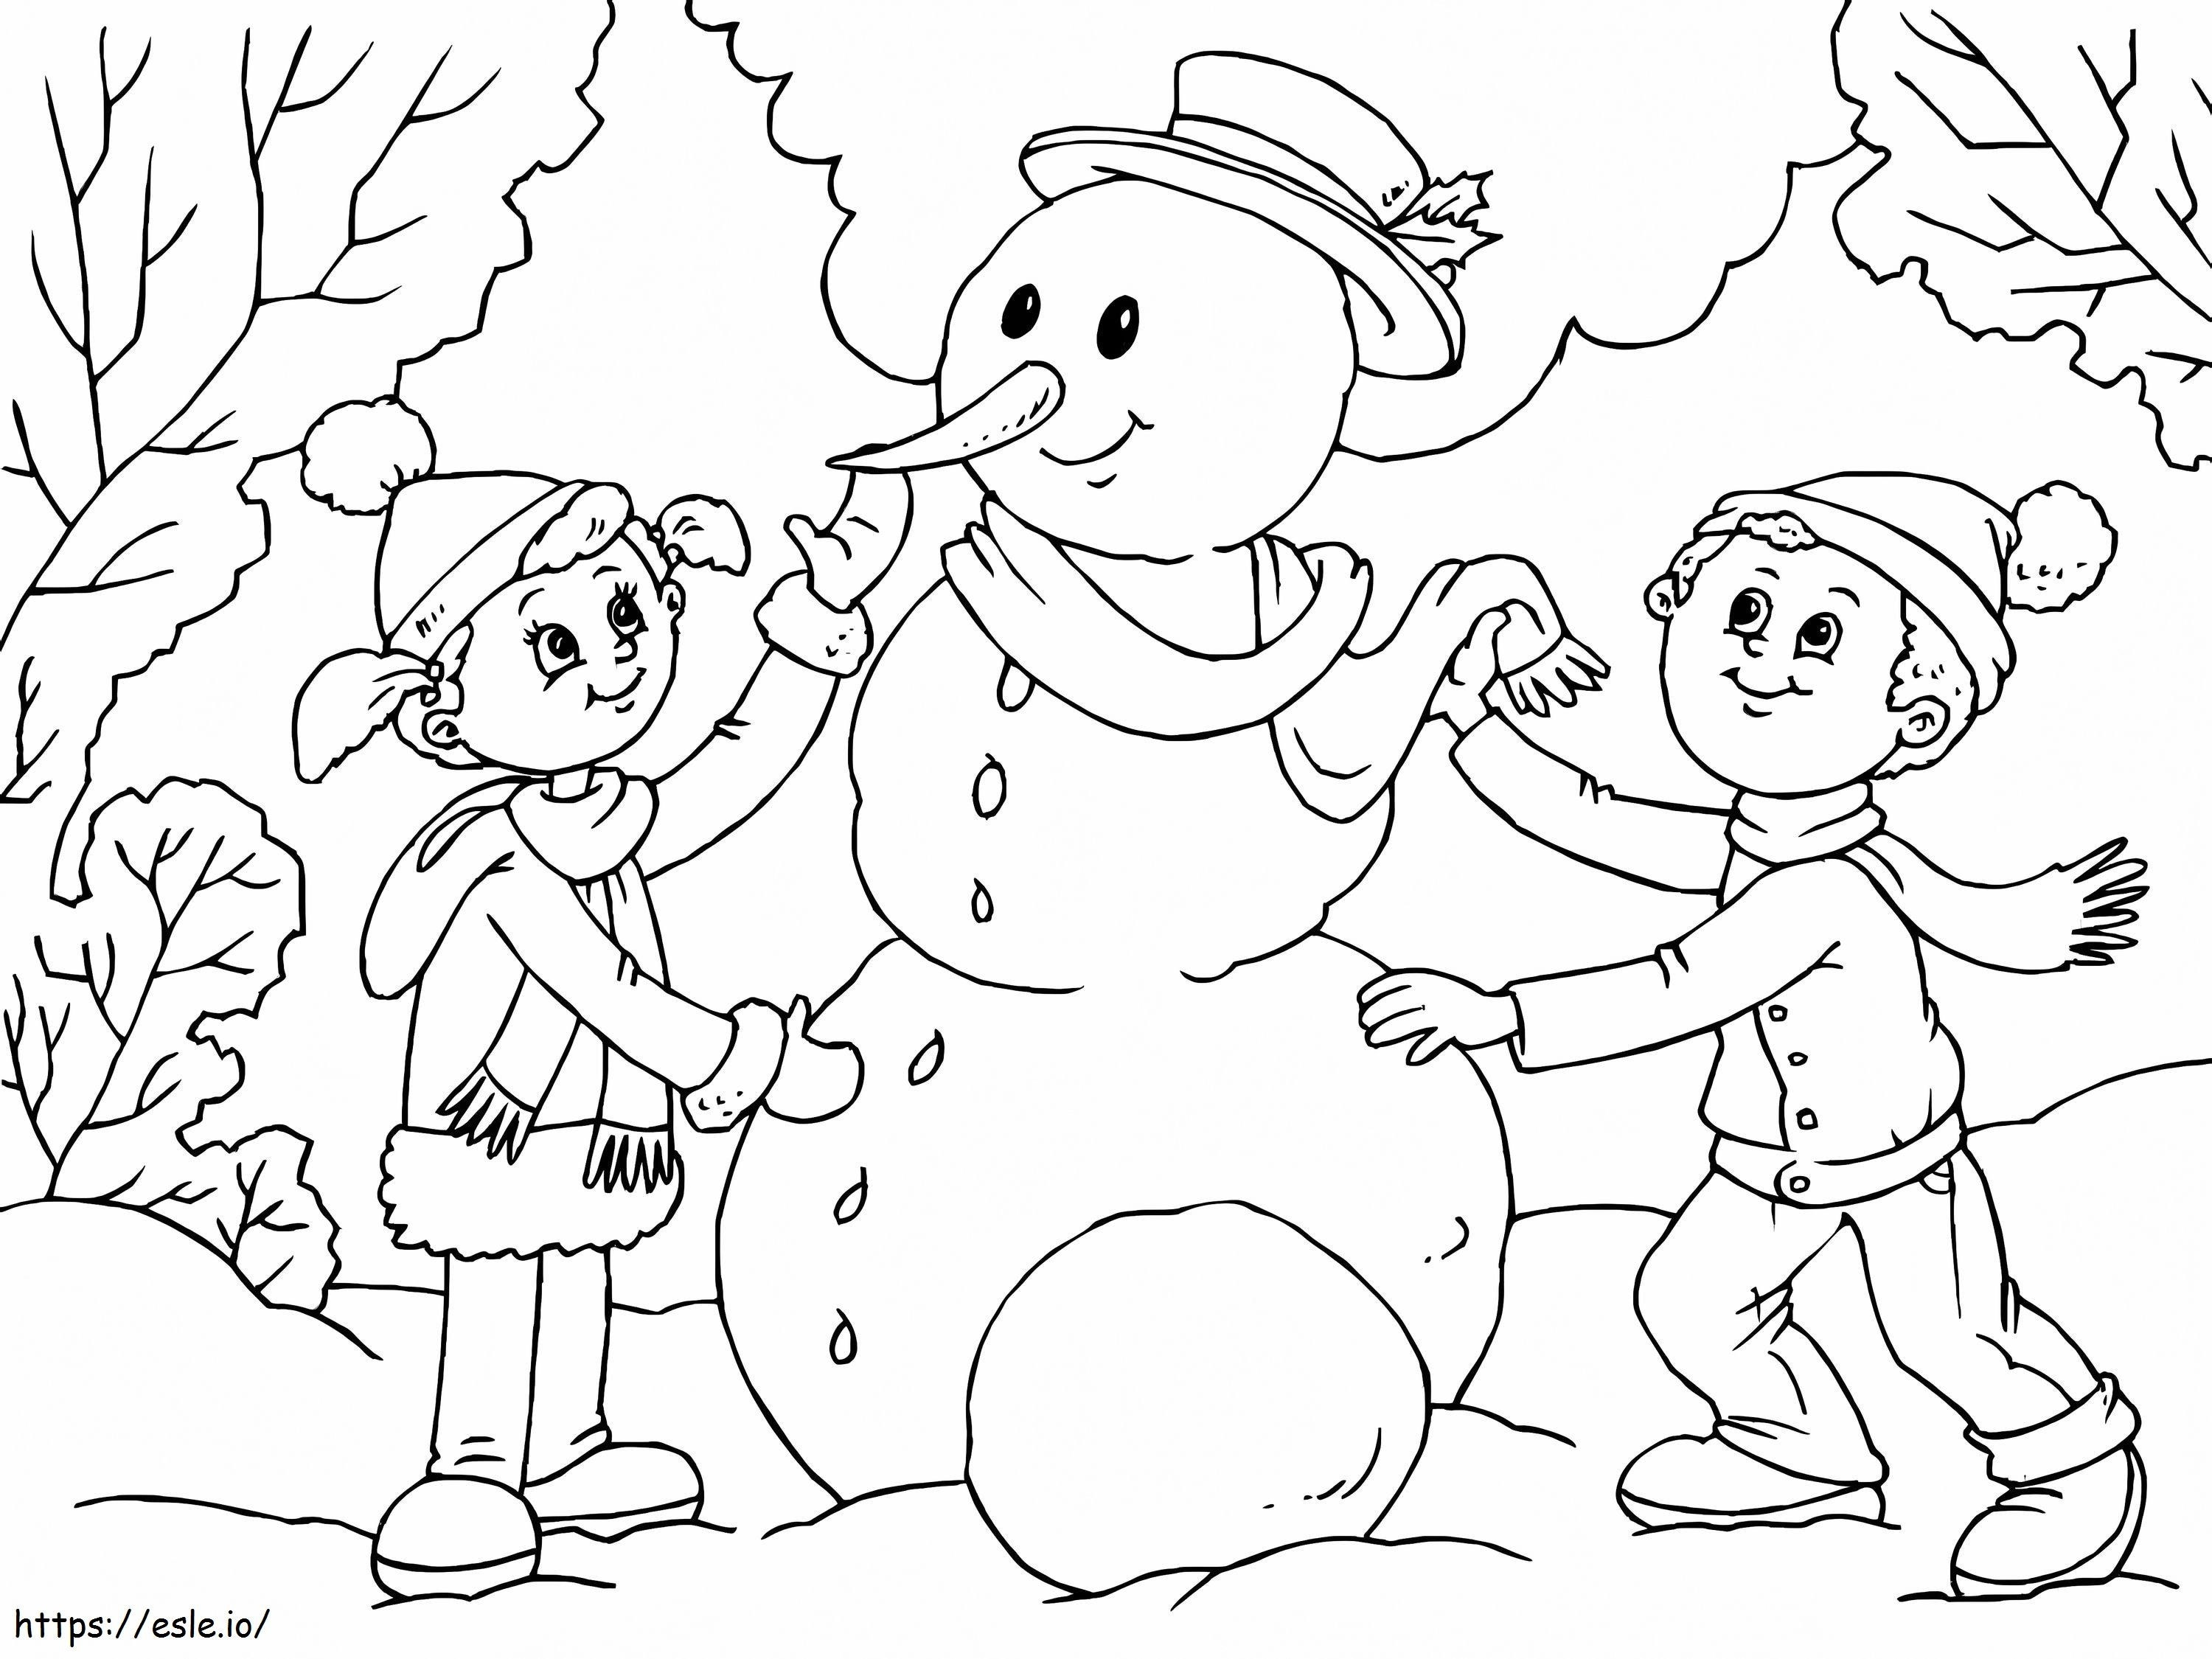 Zwei Kinder bauen einen Schneemann ausmalbilder